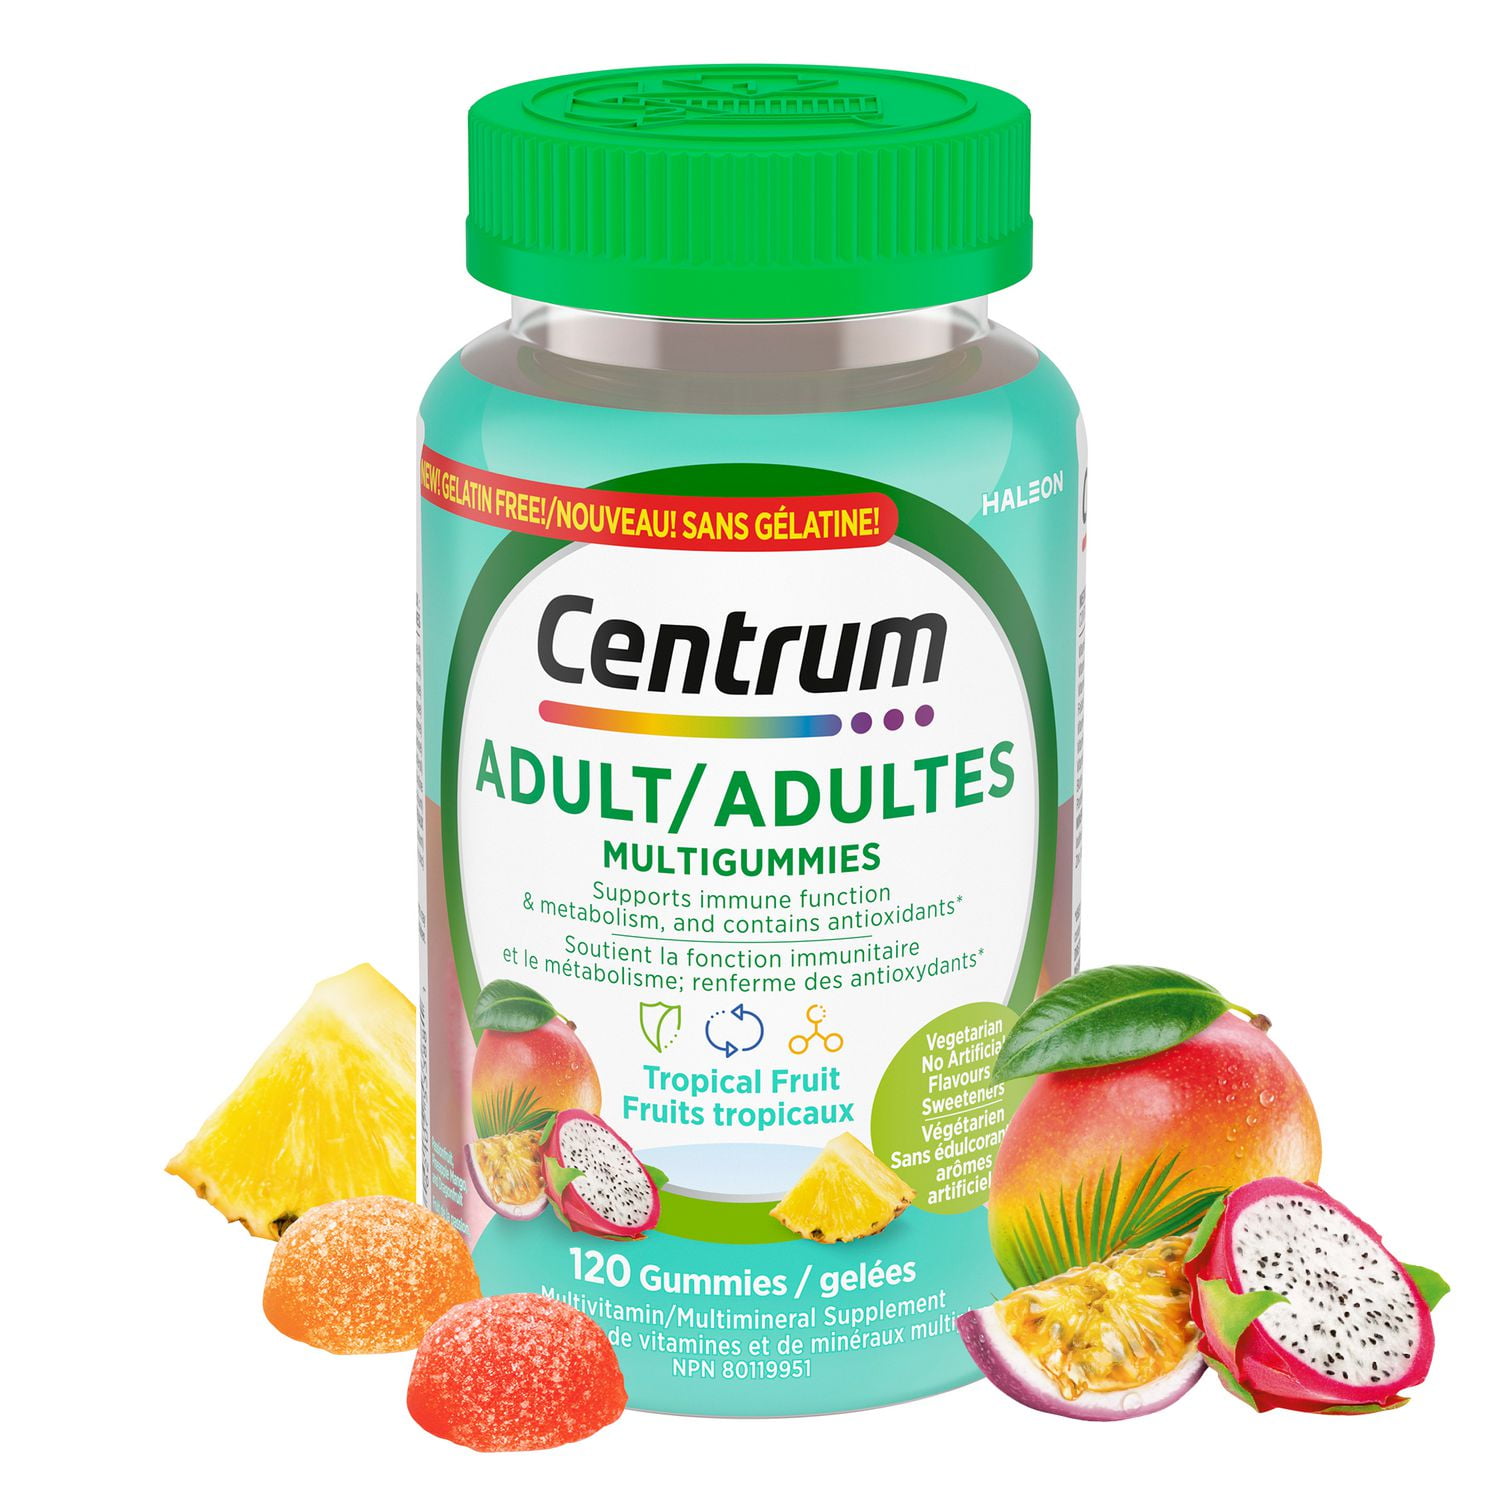 Centrum Multigummies Gummy Multivitamin For Women - Shop